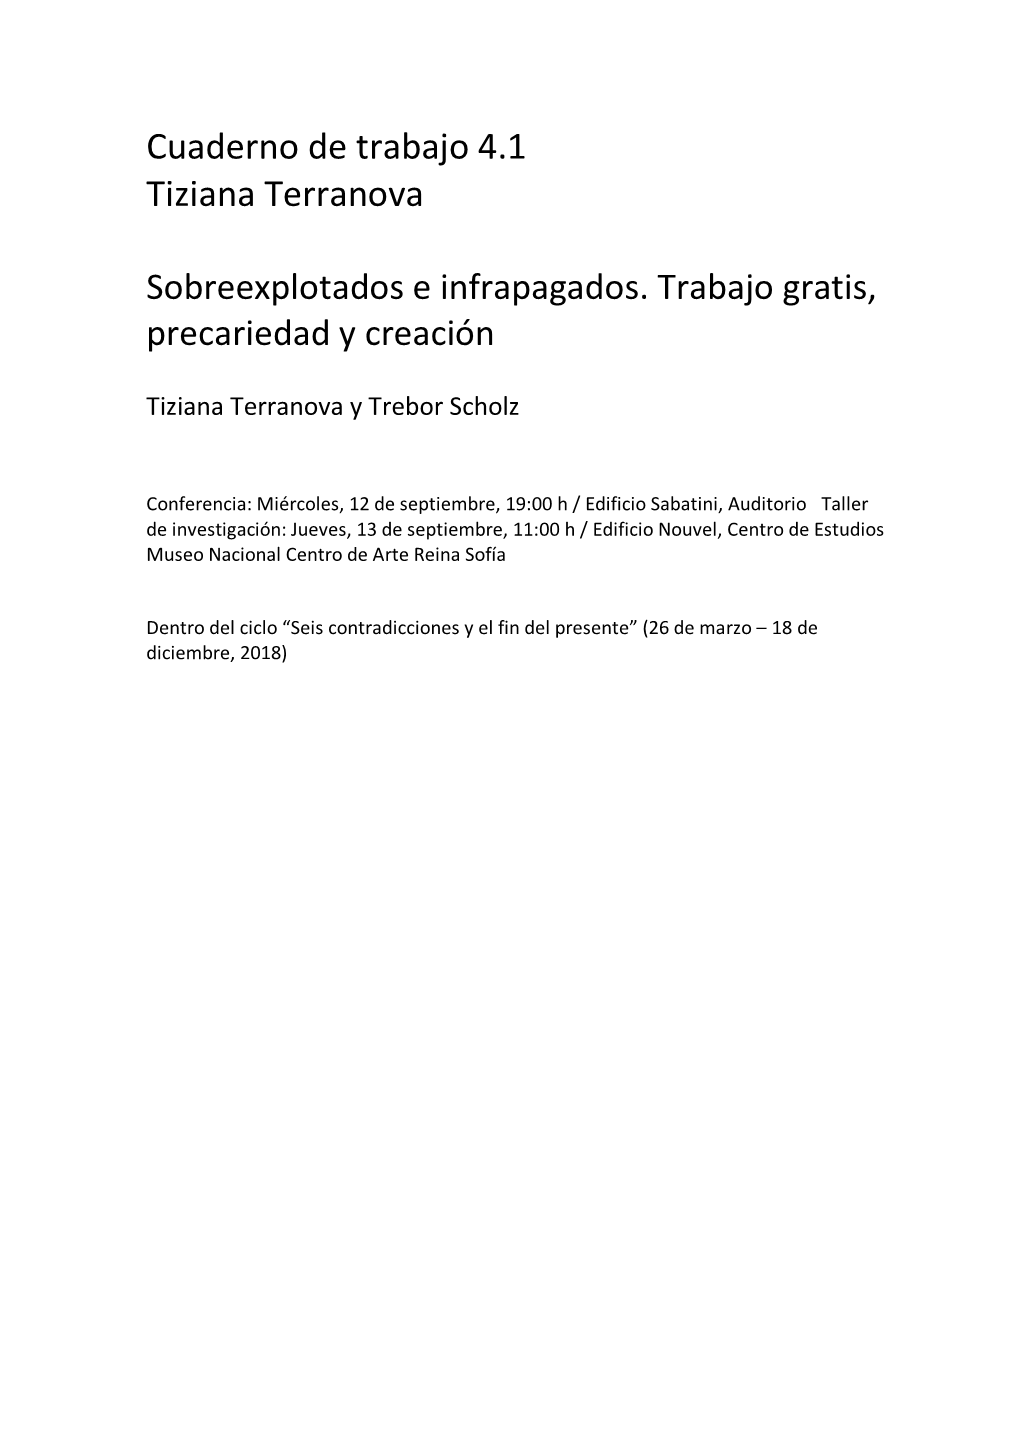 Workbook 4. Tiziana Terranova